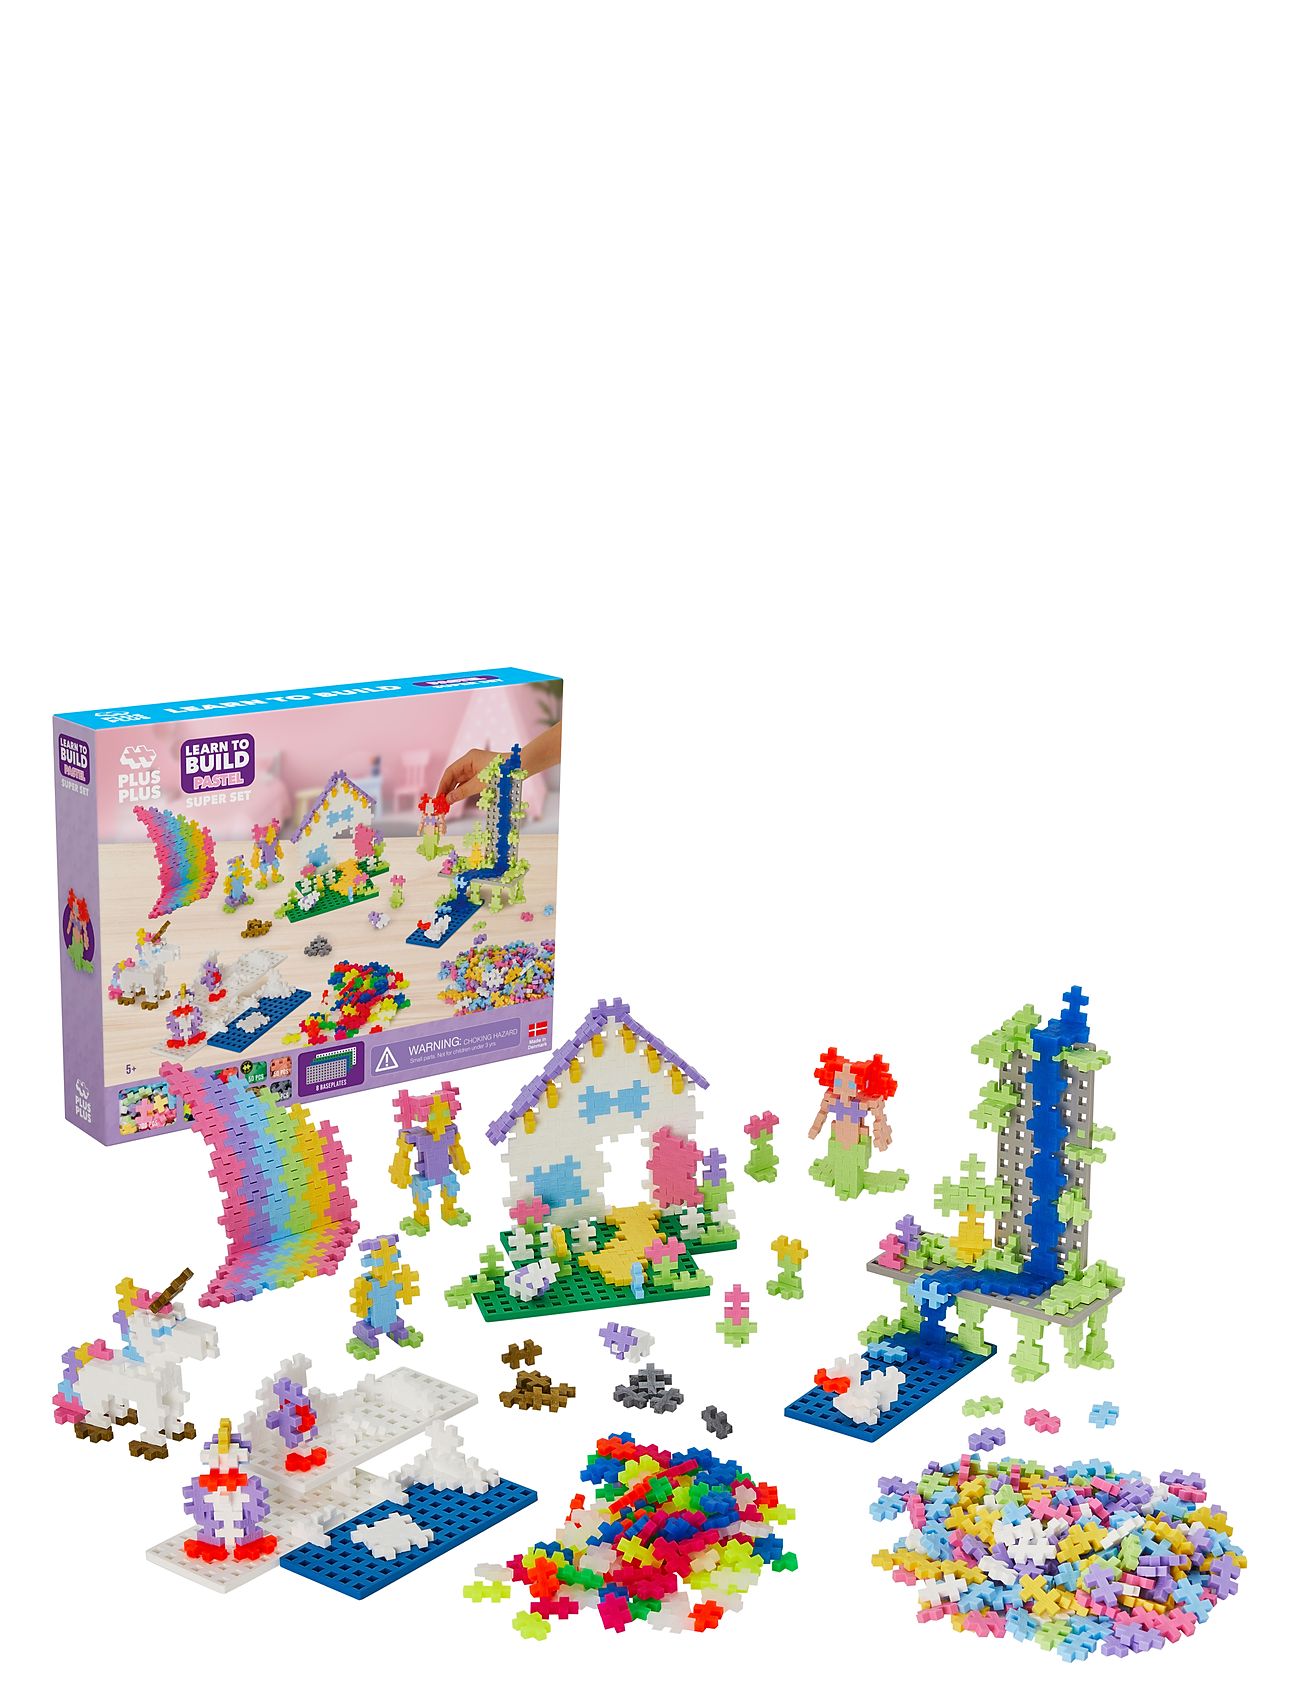 Plus-Plus Pastel Learn To Build Super Set Toys Building Sets & Blocks Building Sets Multi/patterned Plus-Plus